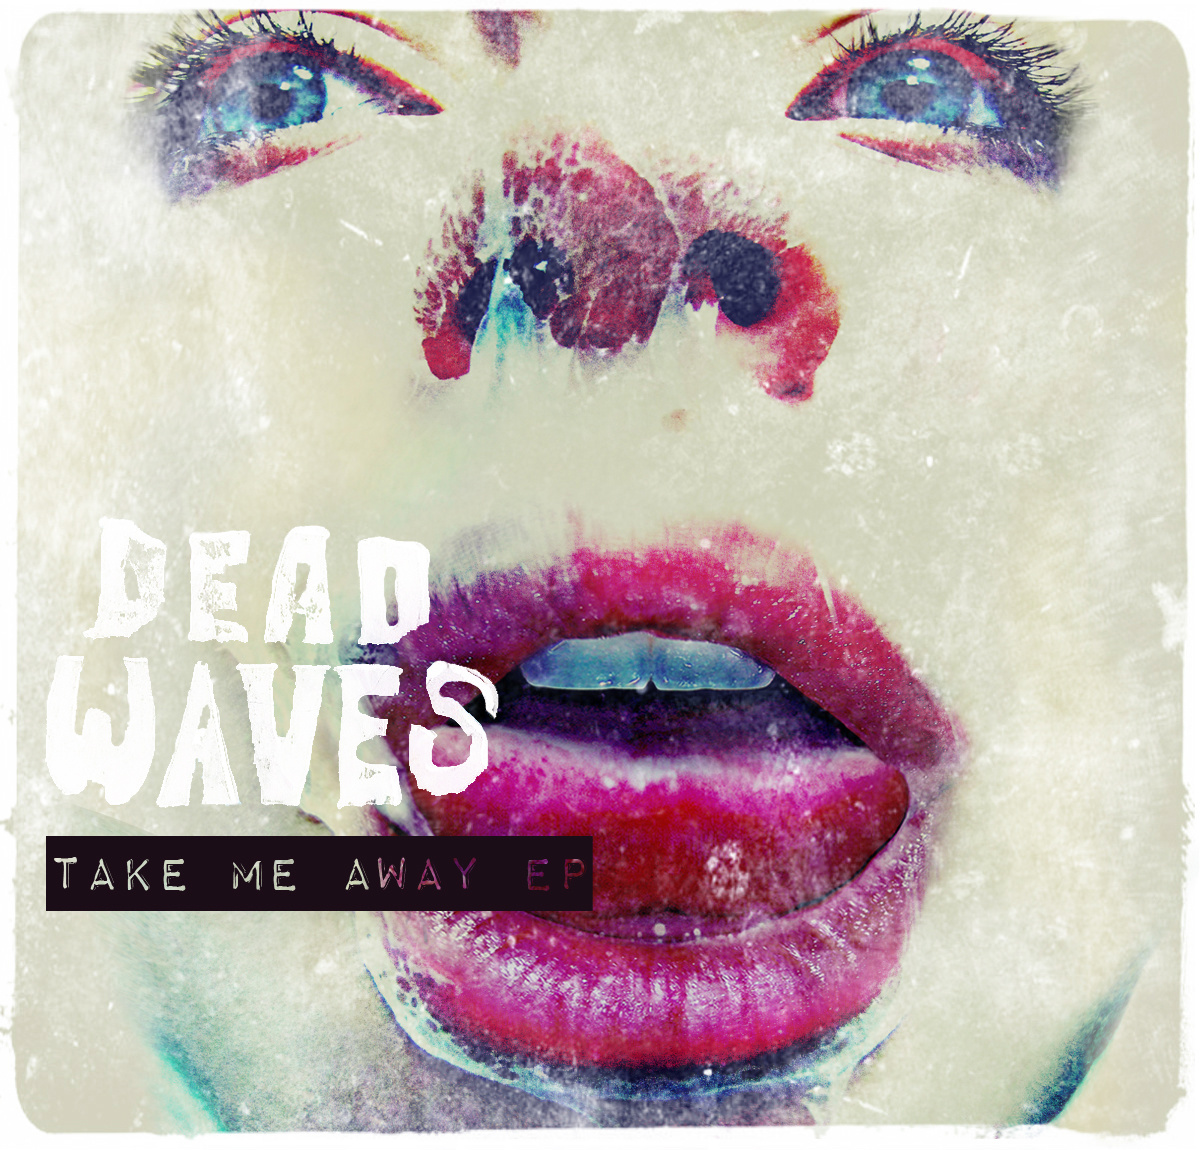 dead waves